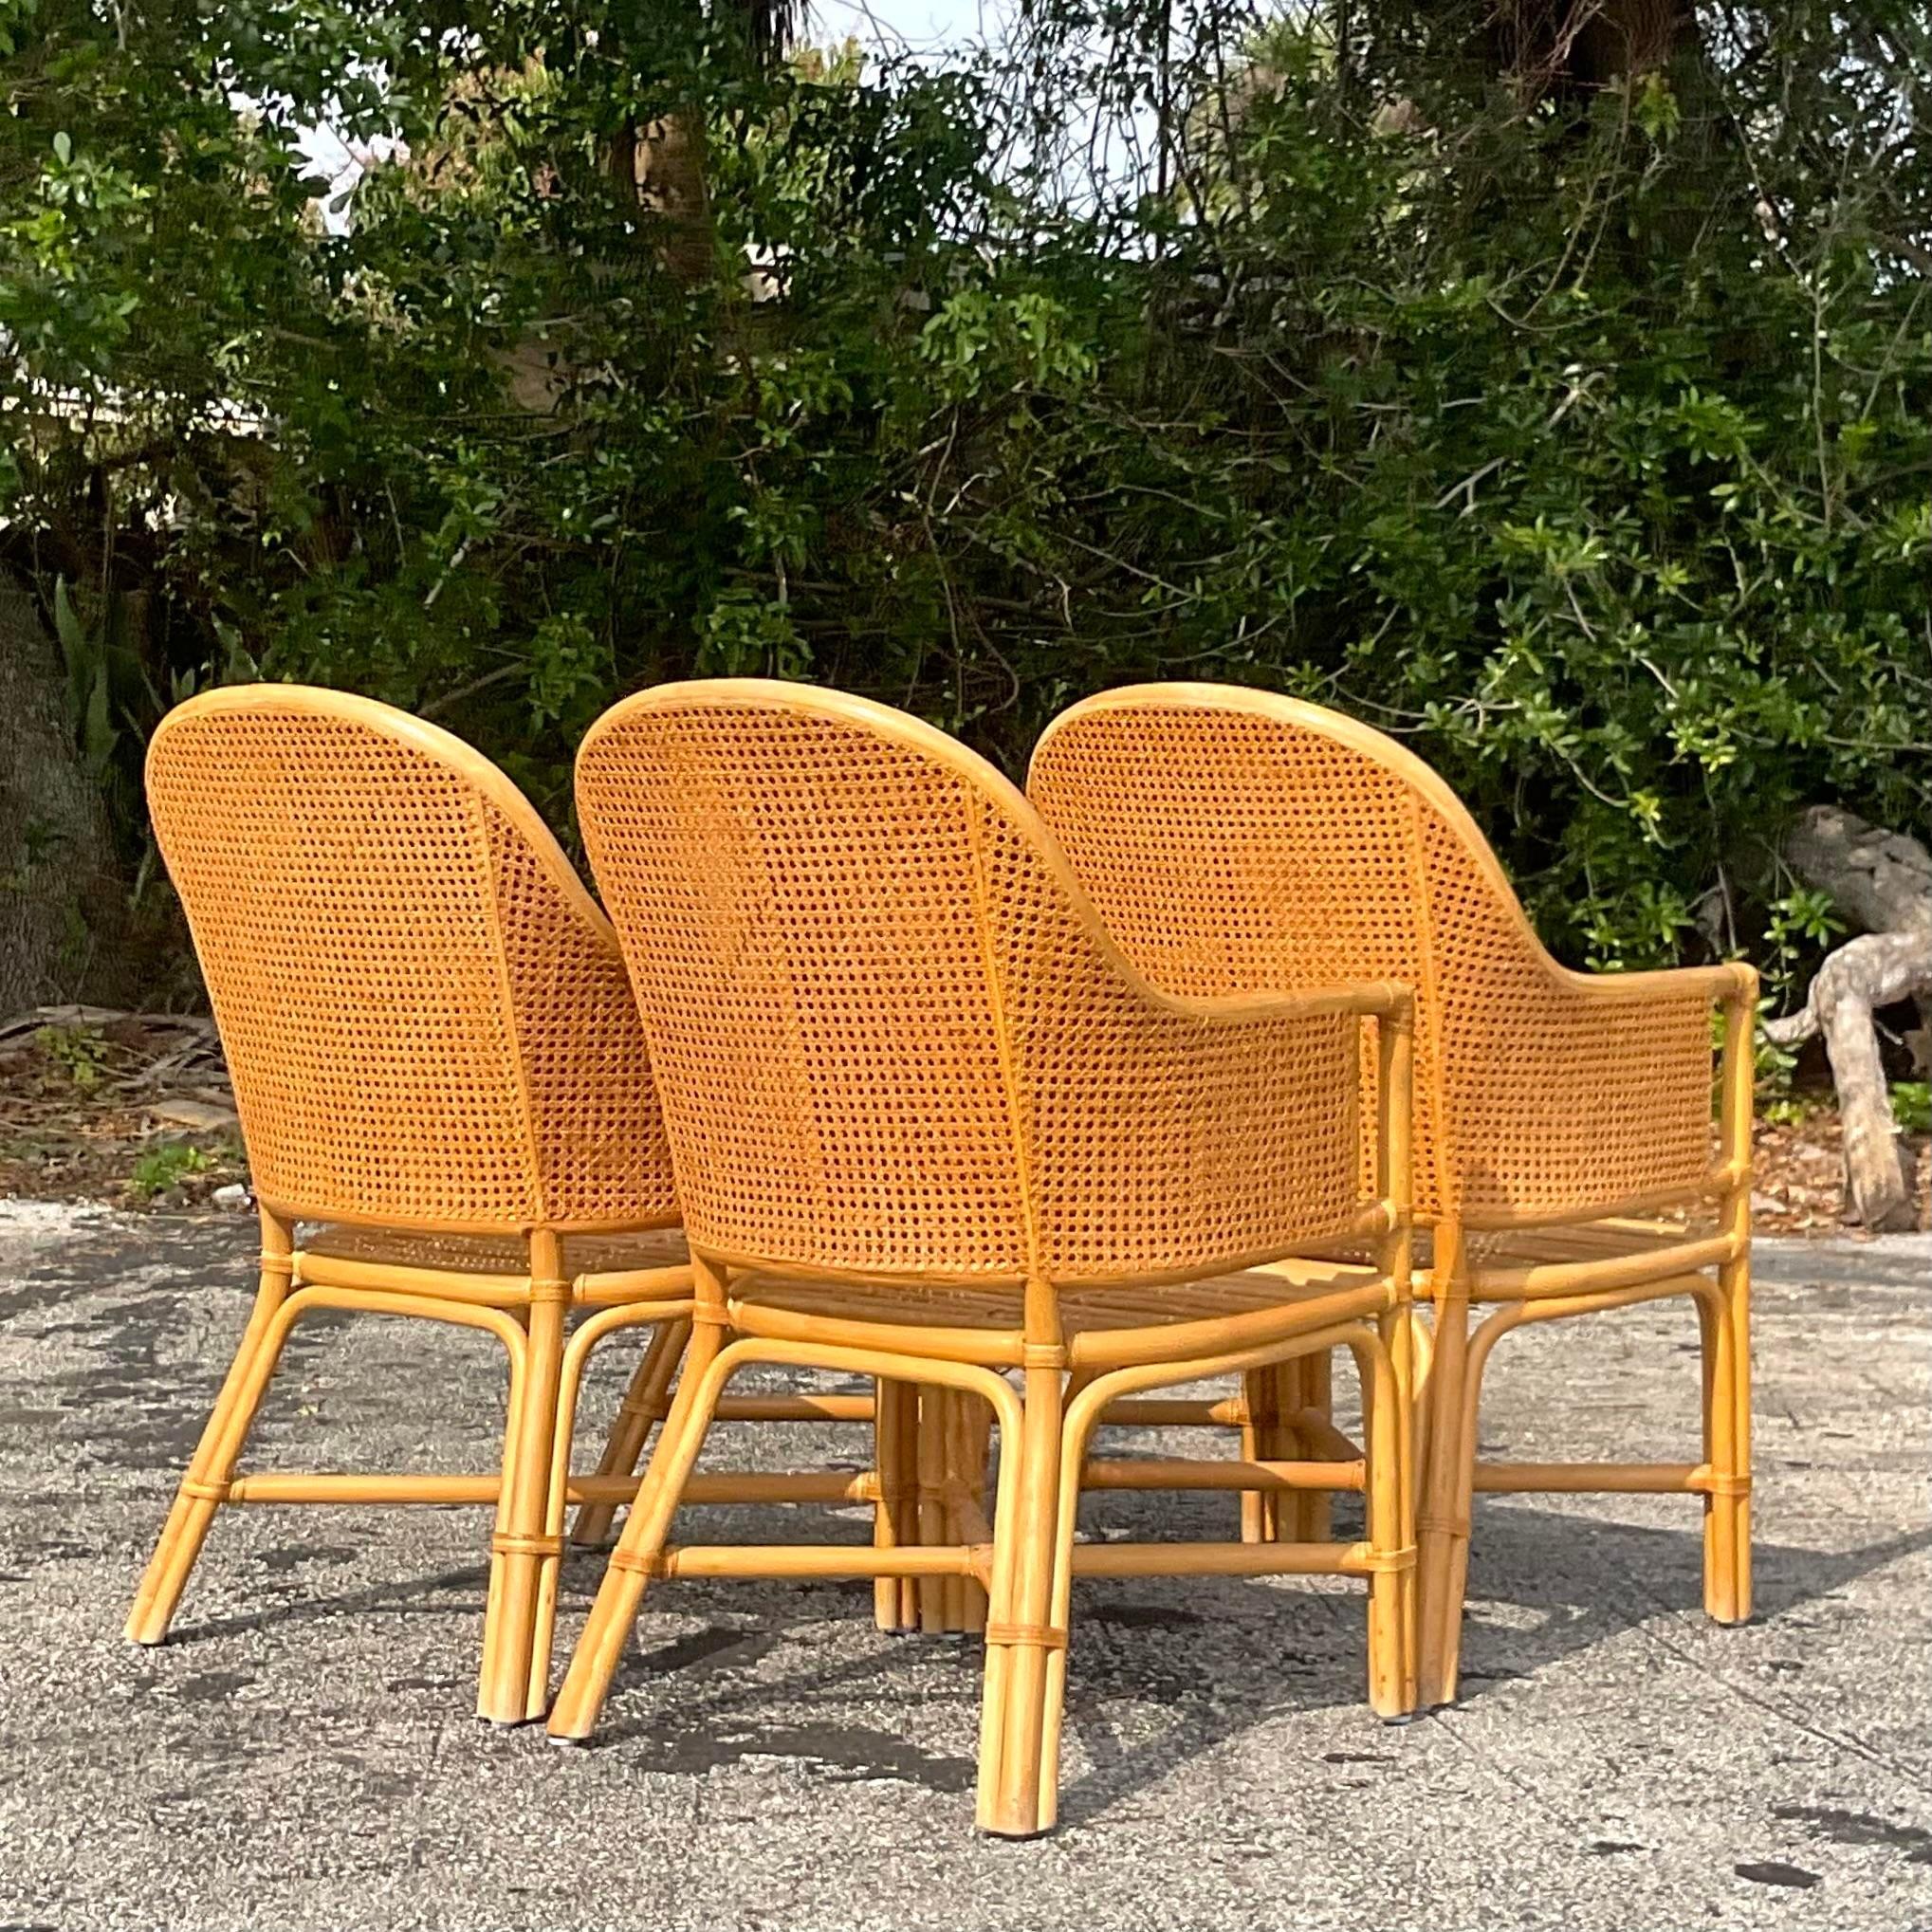 Dieses Set aus 4 Rattanstühlen im Vintage-Stil, inspiriert von McGuire, steht für zeitlosen Küsten-Chic. Diese Stühle, die sowohl stilvoll als auch langlebig sind, strahlen eine luftige Eleganz aus, die das Leben an der Küste verkörpert. Mit ihrem